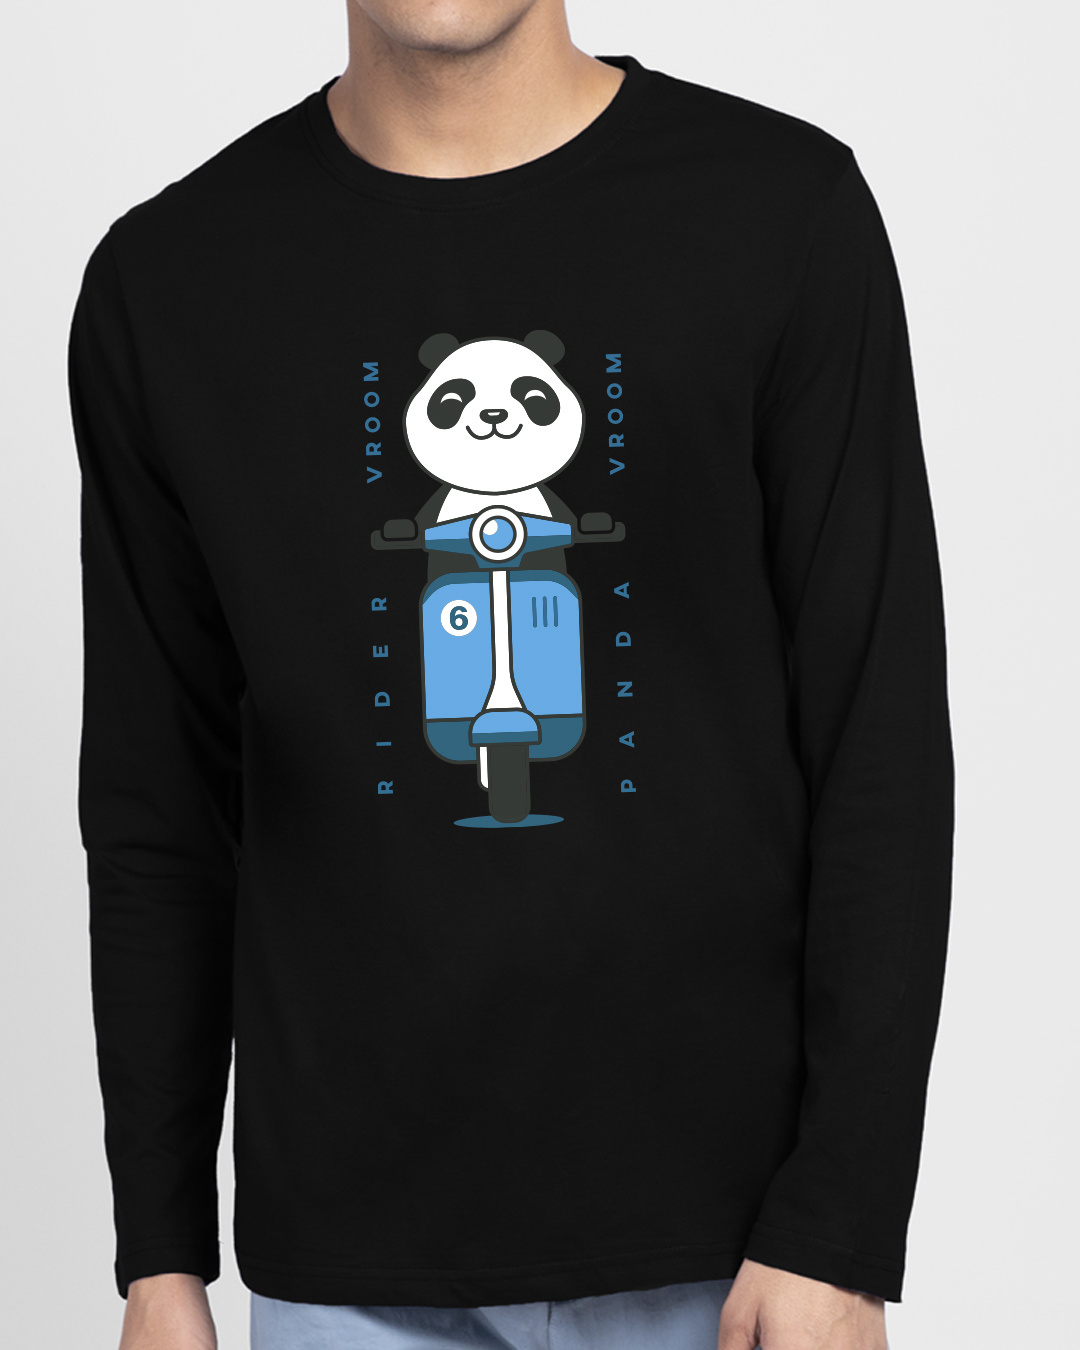 Buy Men's Black Vroom Panda Graphic Printed T-shirt Online at Bewakoof